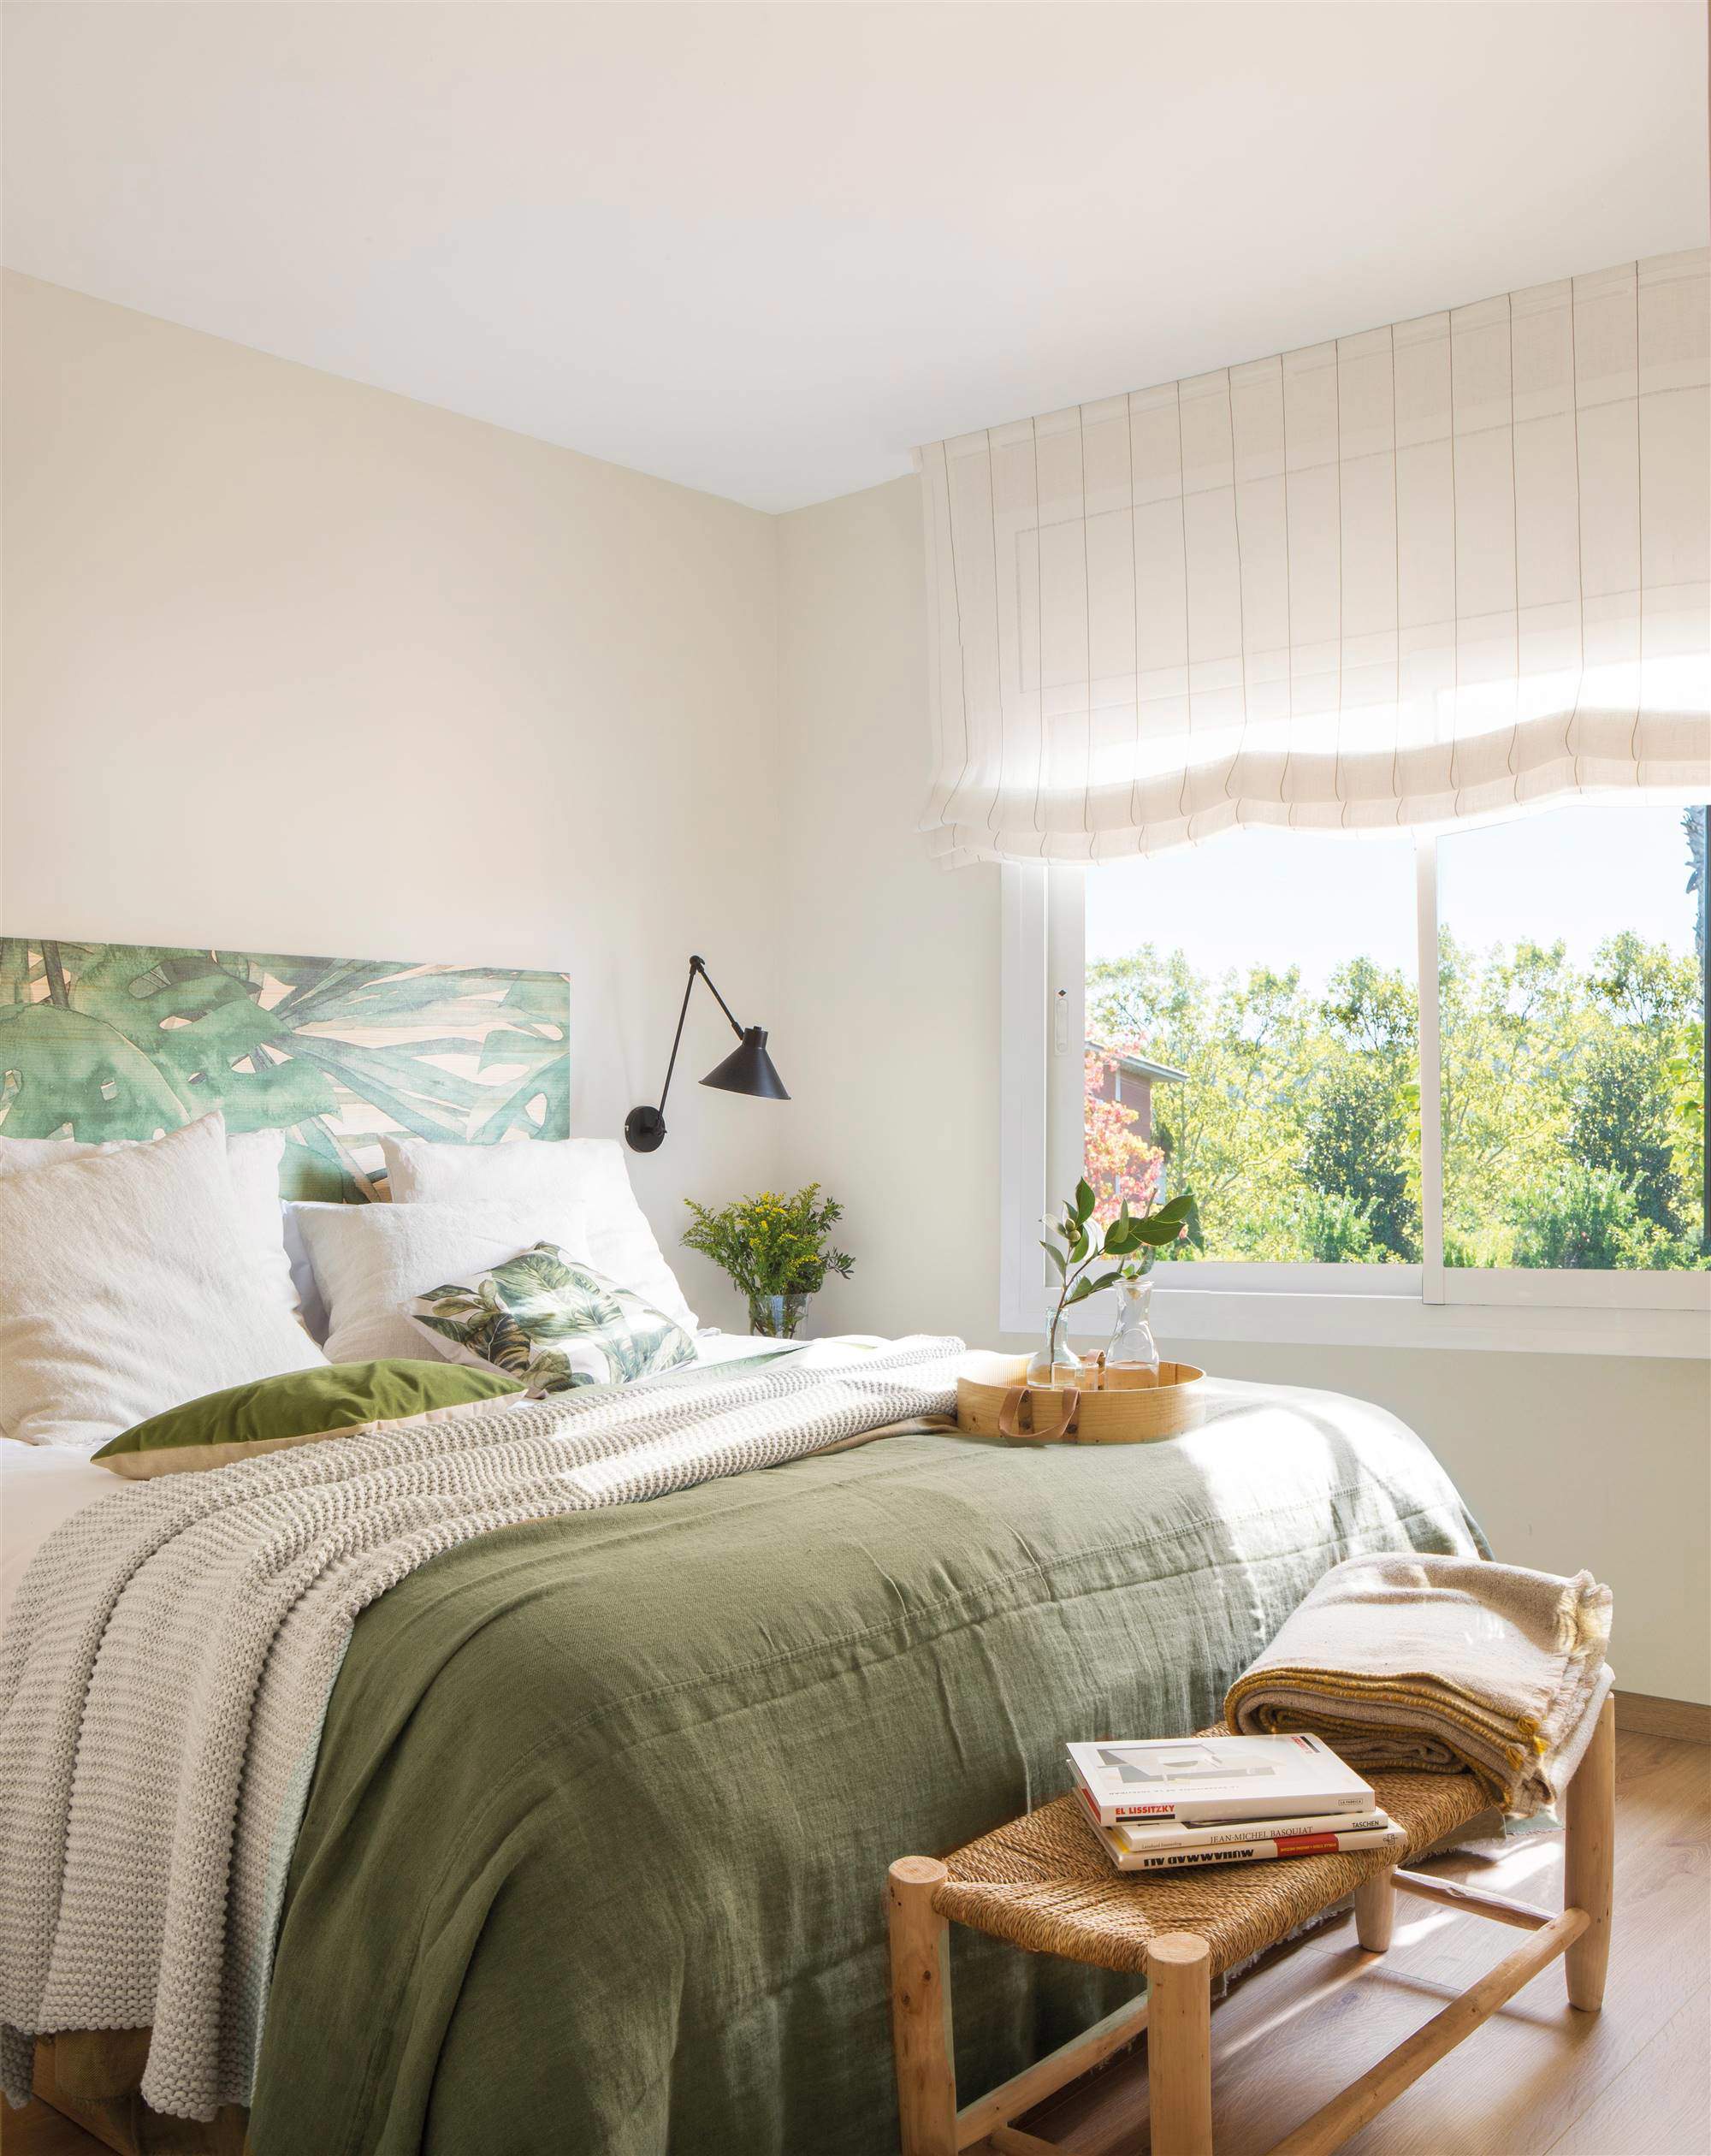 Dormitorio con panel de madera pintado a modo de cabecero